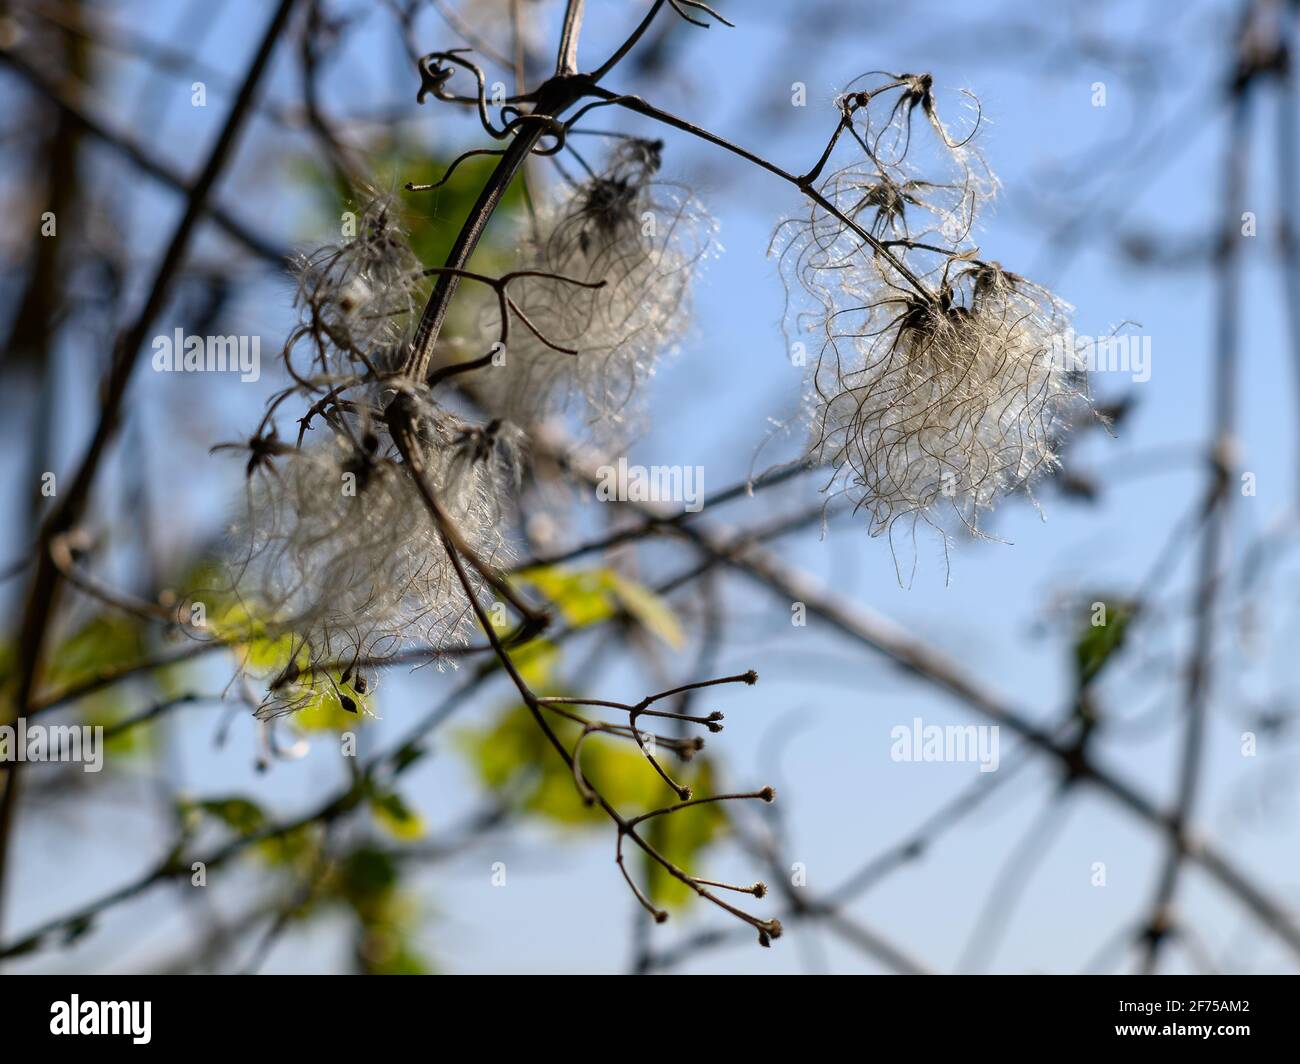 Flauschige weiße Samen von Wild Clematis, bekannt als Traveller's Joy, in einer Hecke im Frühjahr, Großbritannien Stockfoto